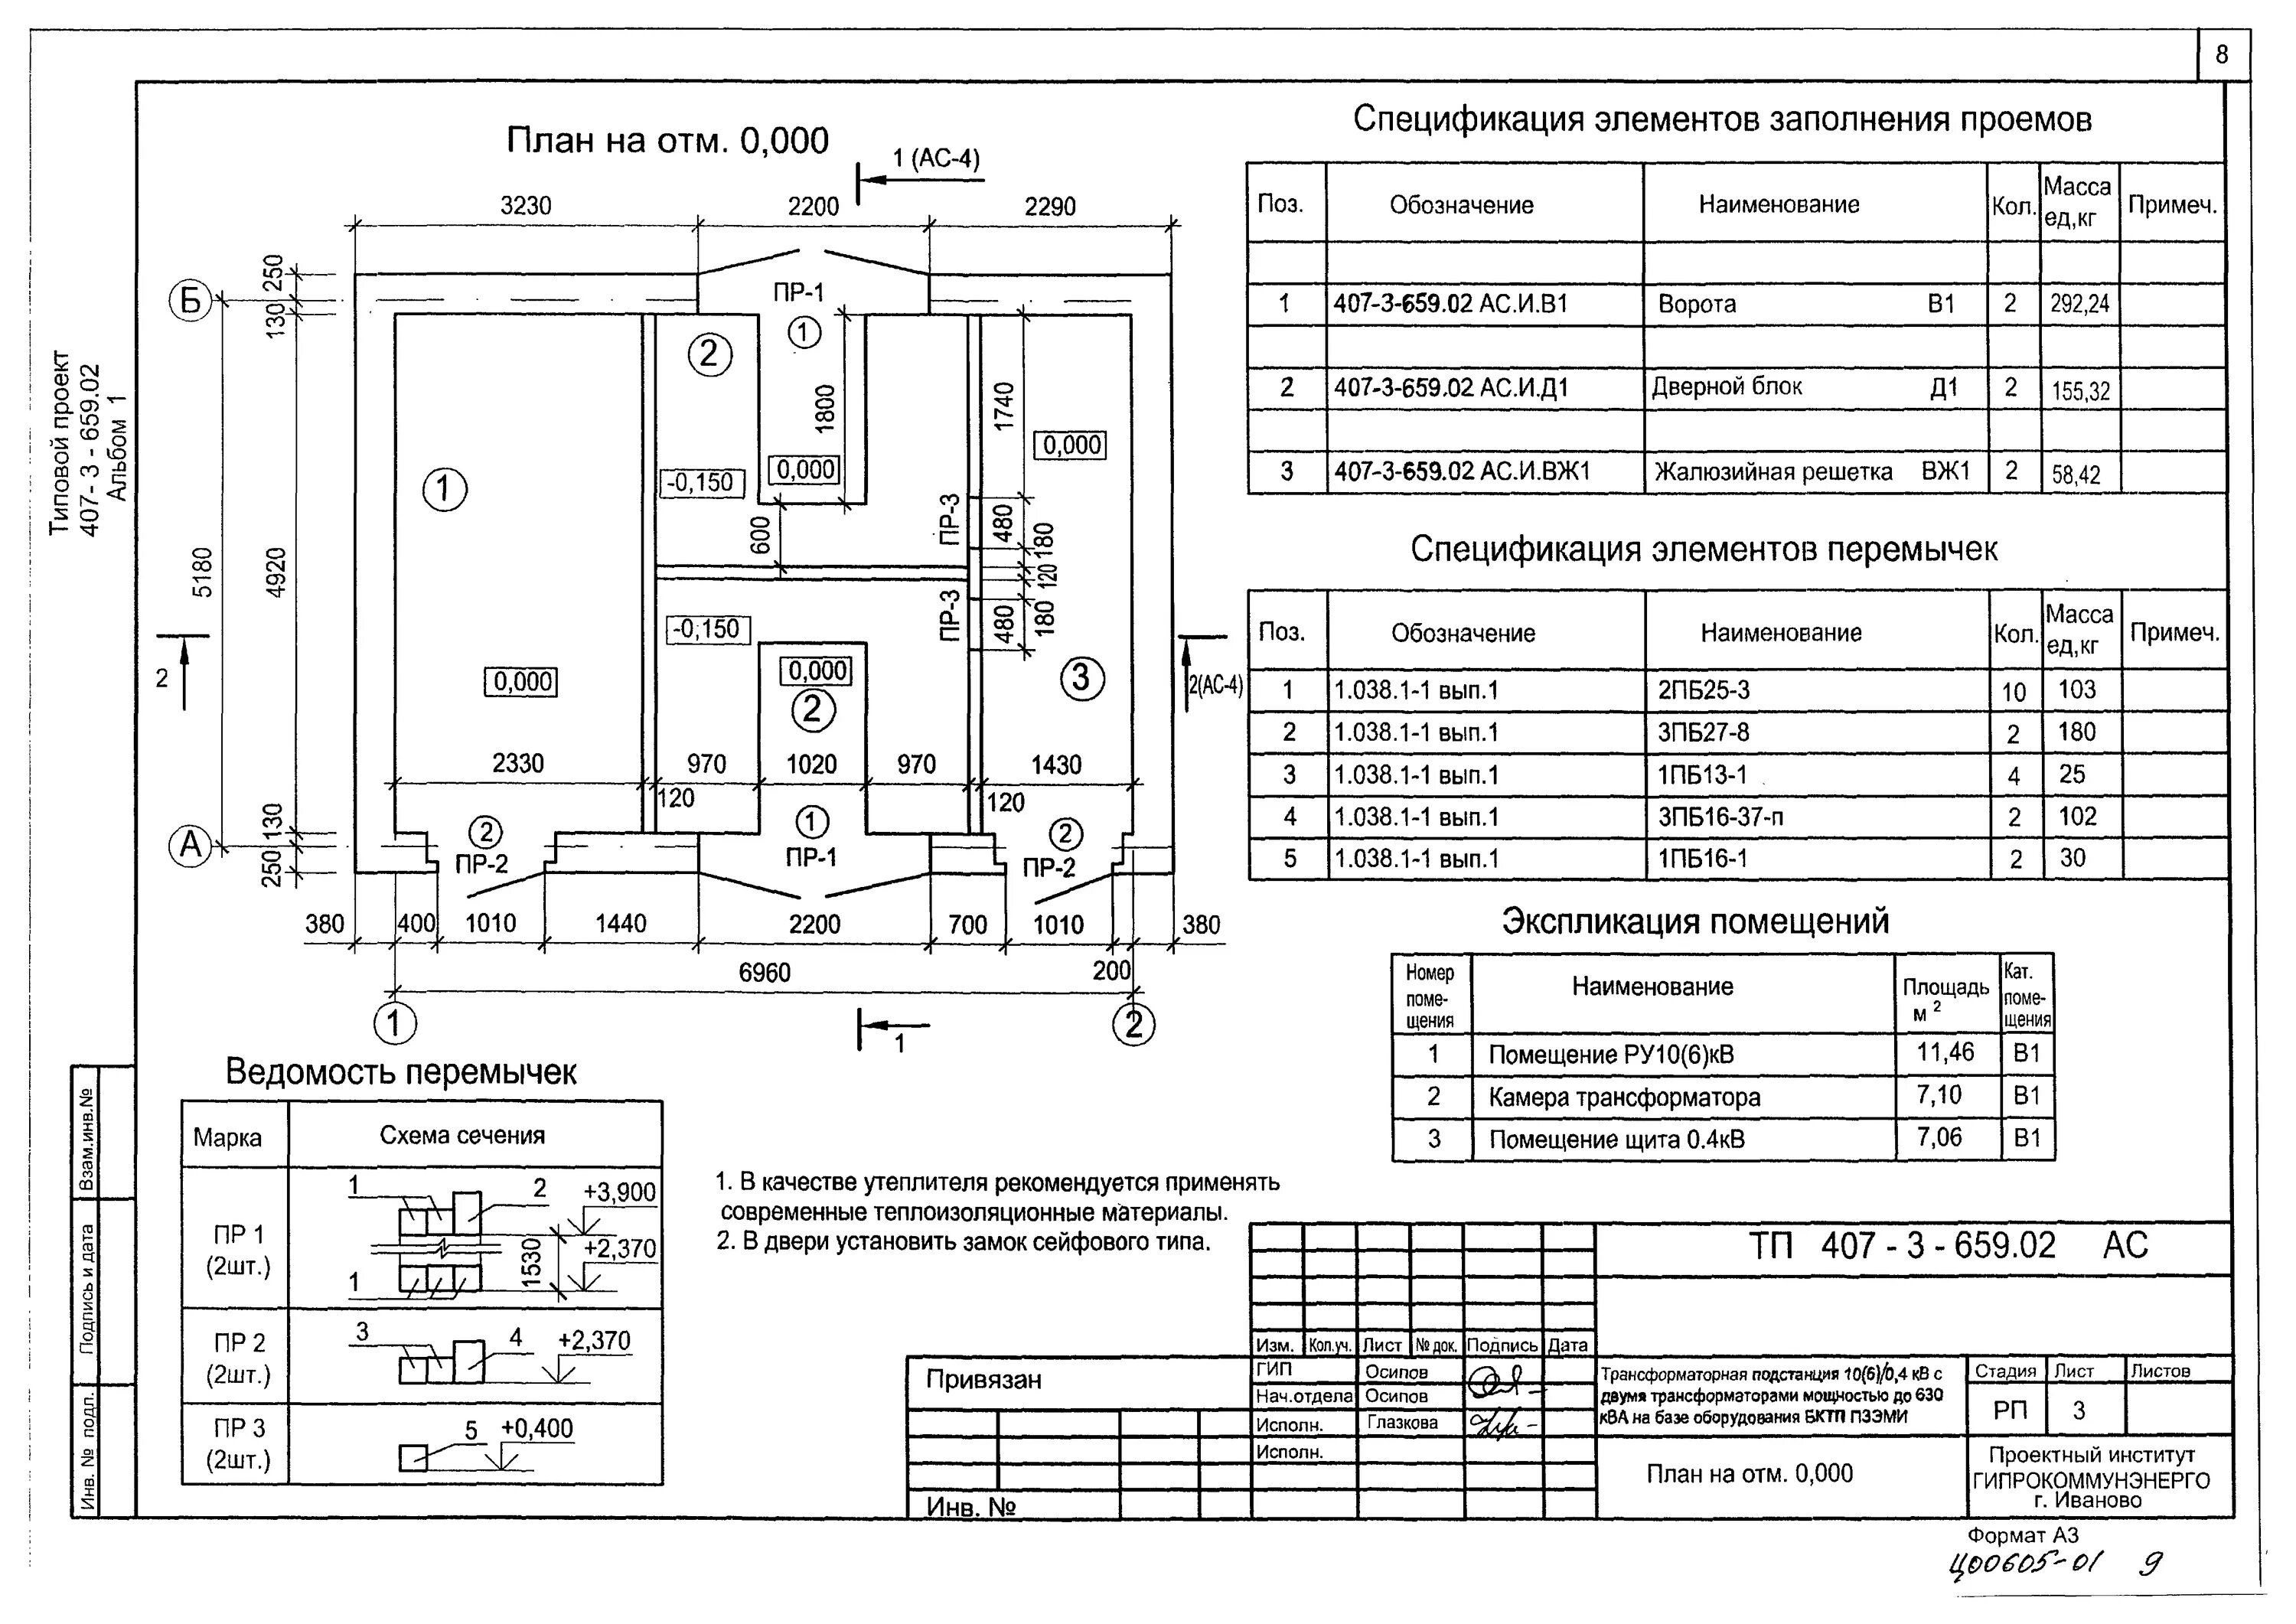 Гост подстанция. Экспликация помещения трансформаторной подстанции. Типовой проект БКТП 2х1600. Обозначение трансформаторной подстанции на плане. План трансформаторной подстанции.